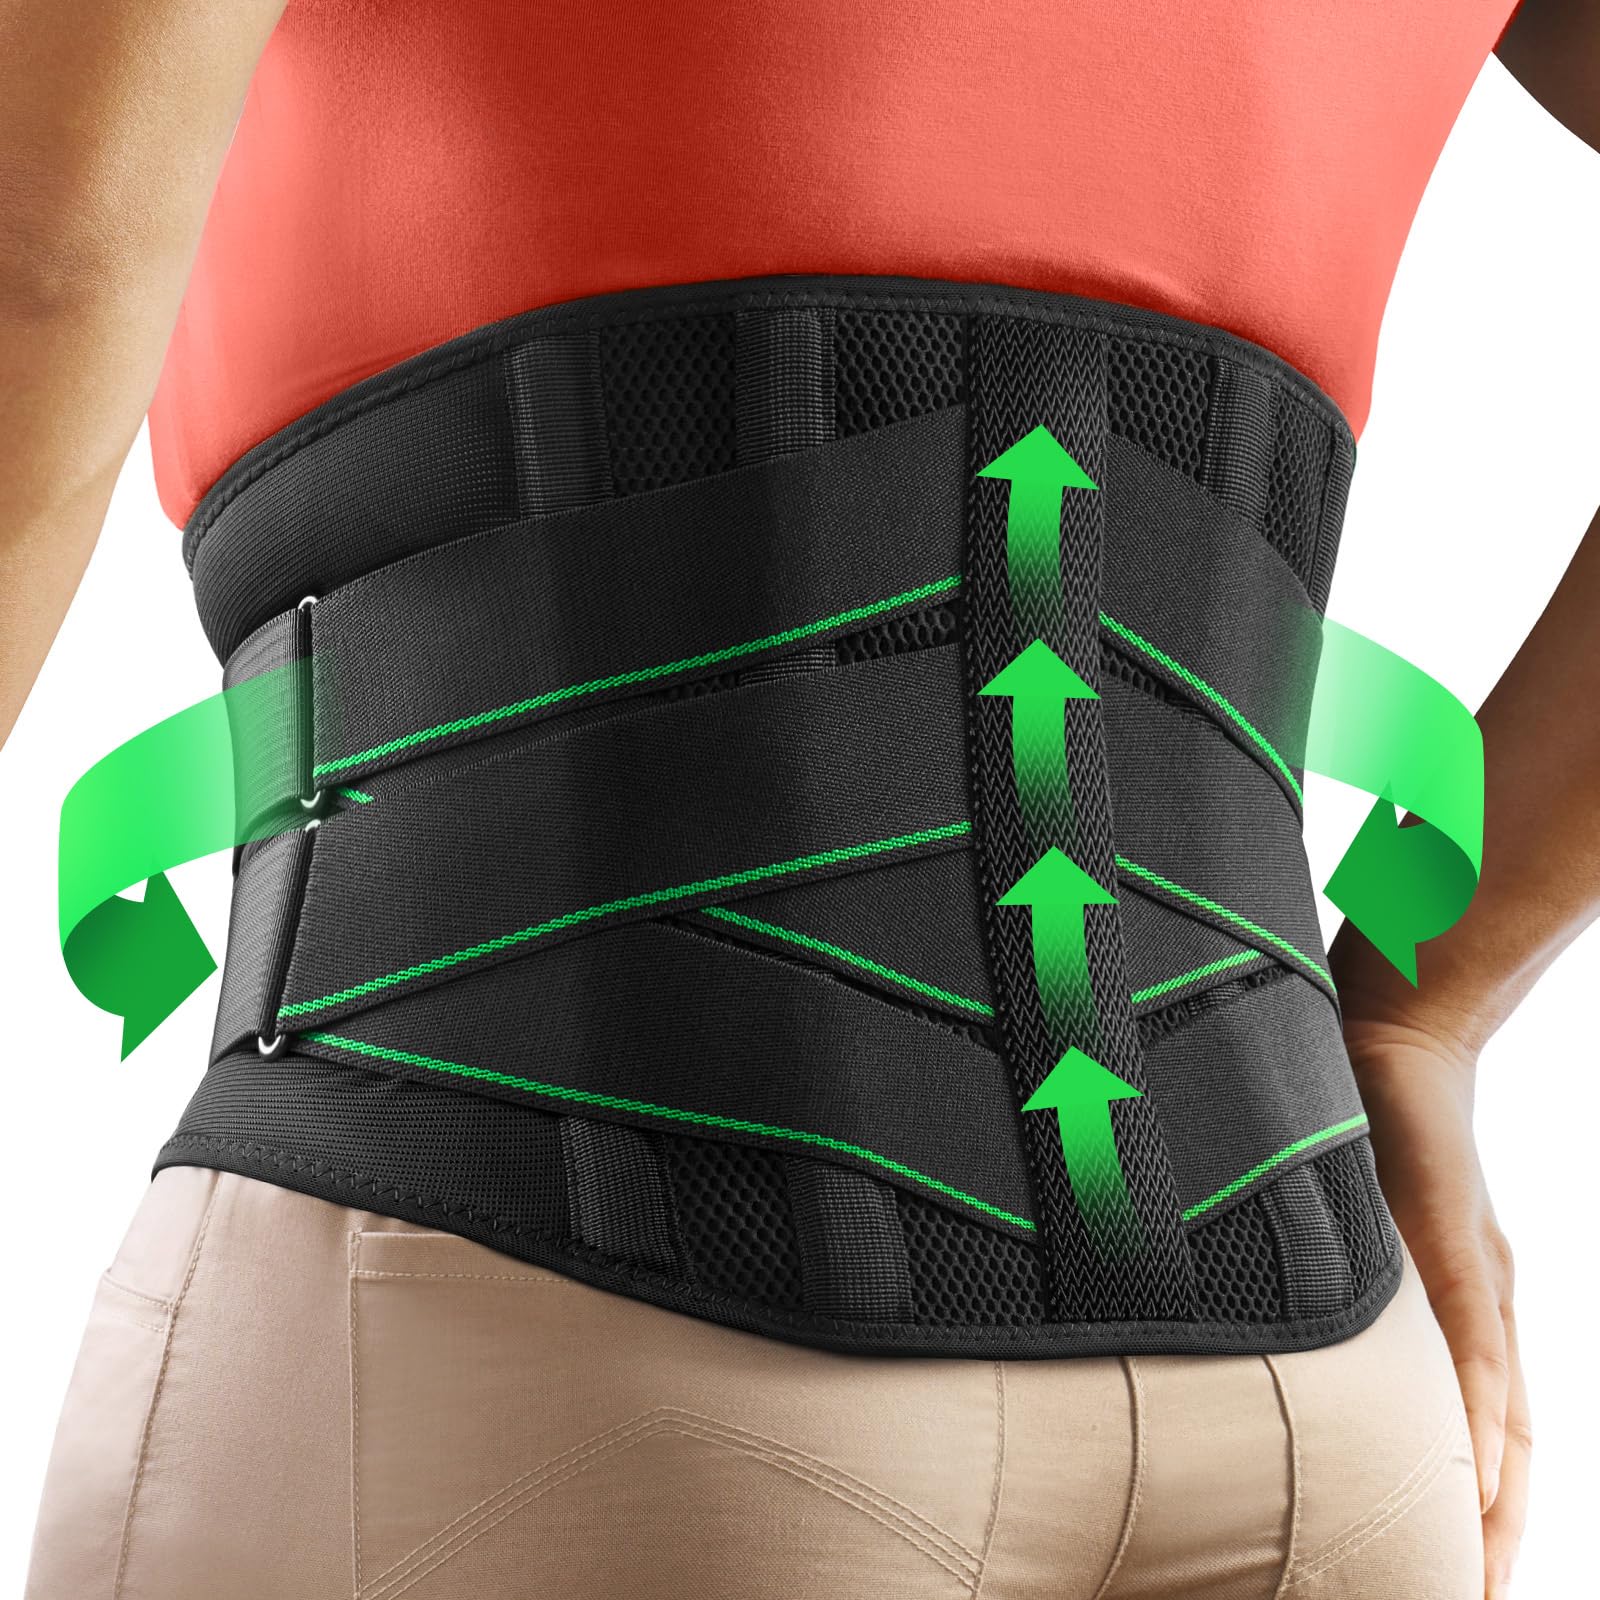 FREETOO Ergonomic Back Support Belt for Men Women Lower Back Pain